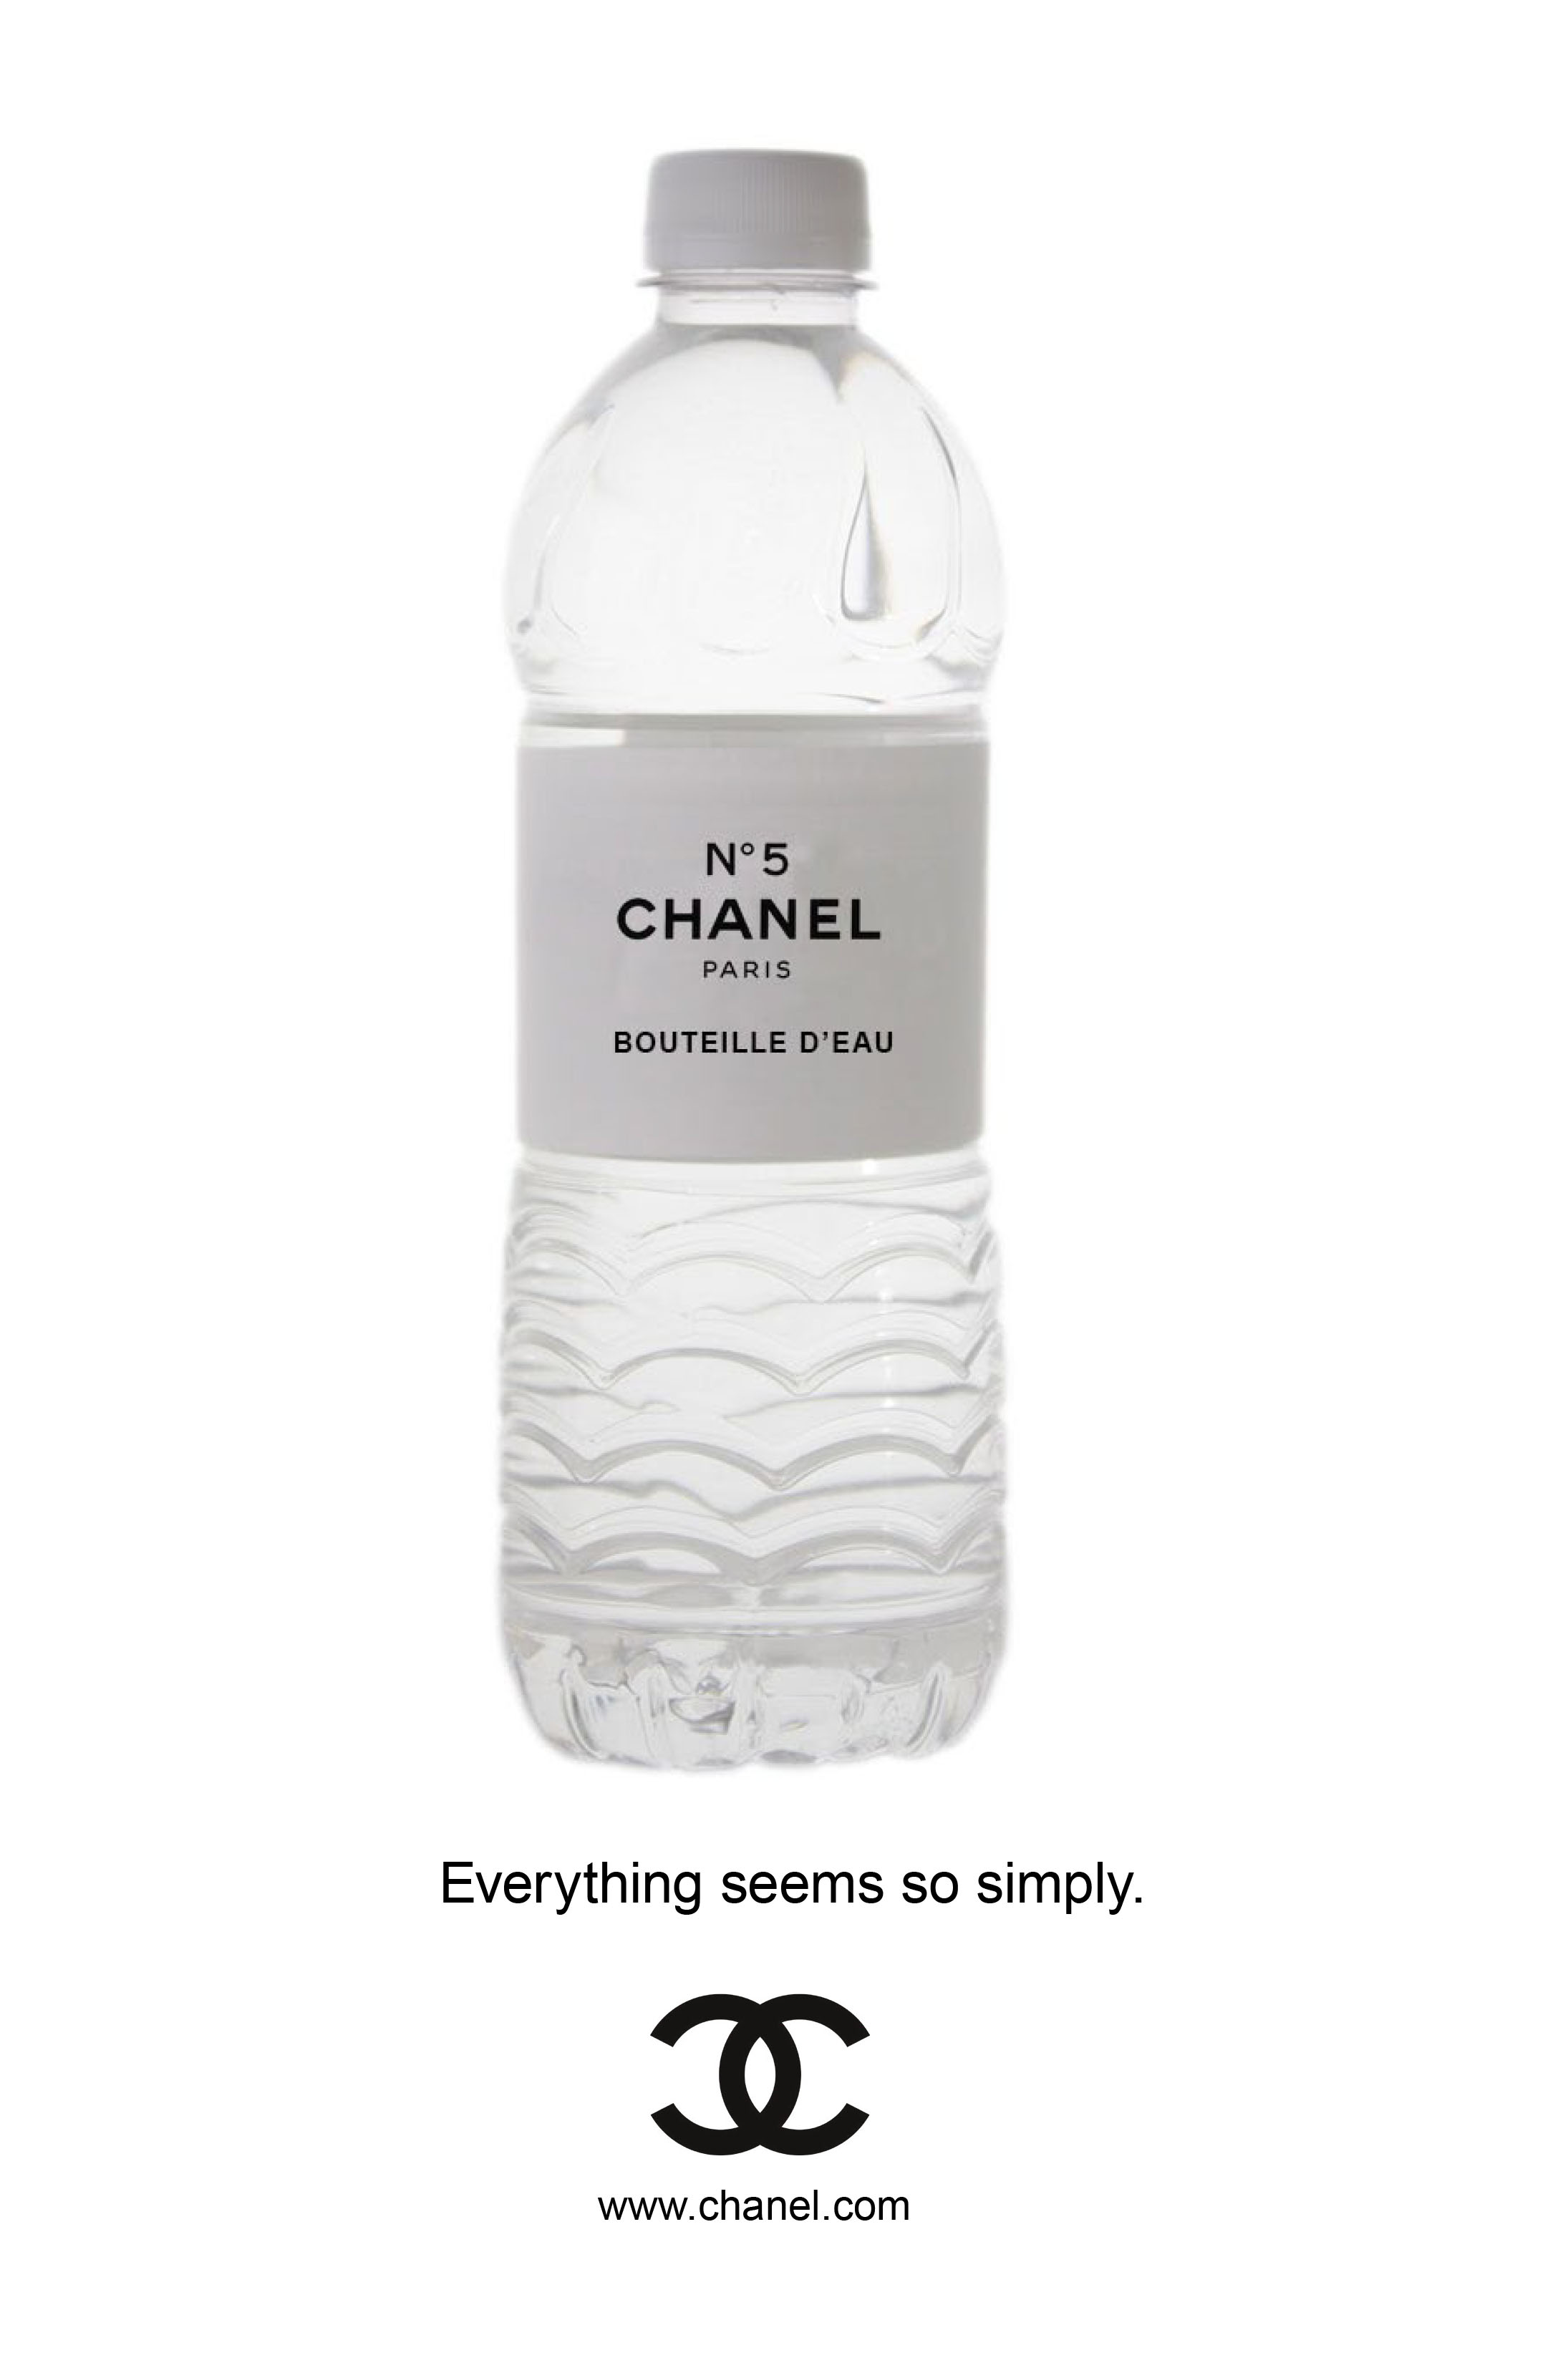 chanel_water_bottle_ad.jpg